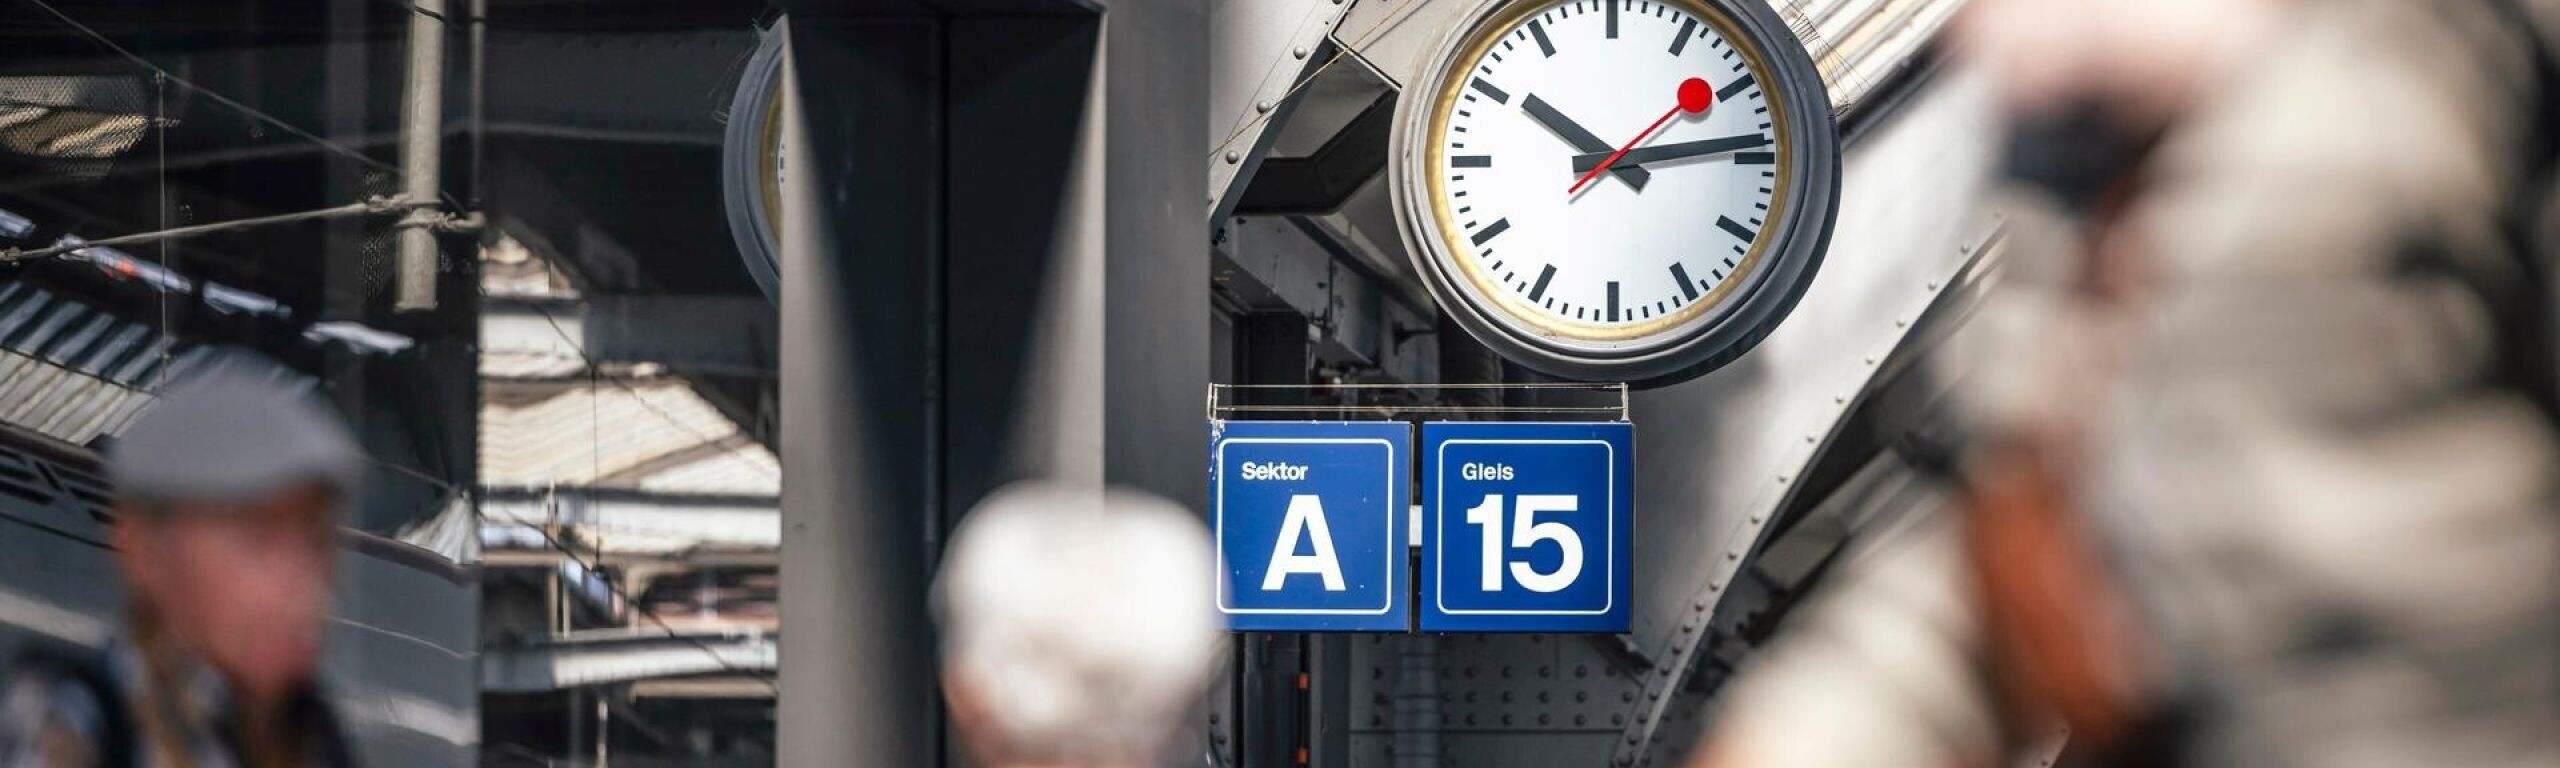 L’orologio di stazione imprime il ritmo da ormai 75 anni.